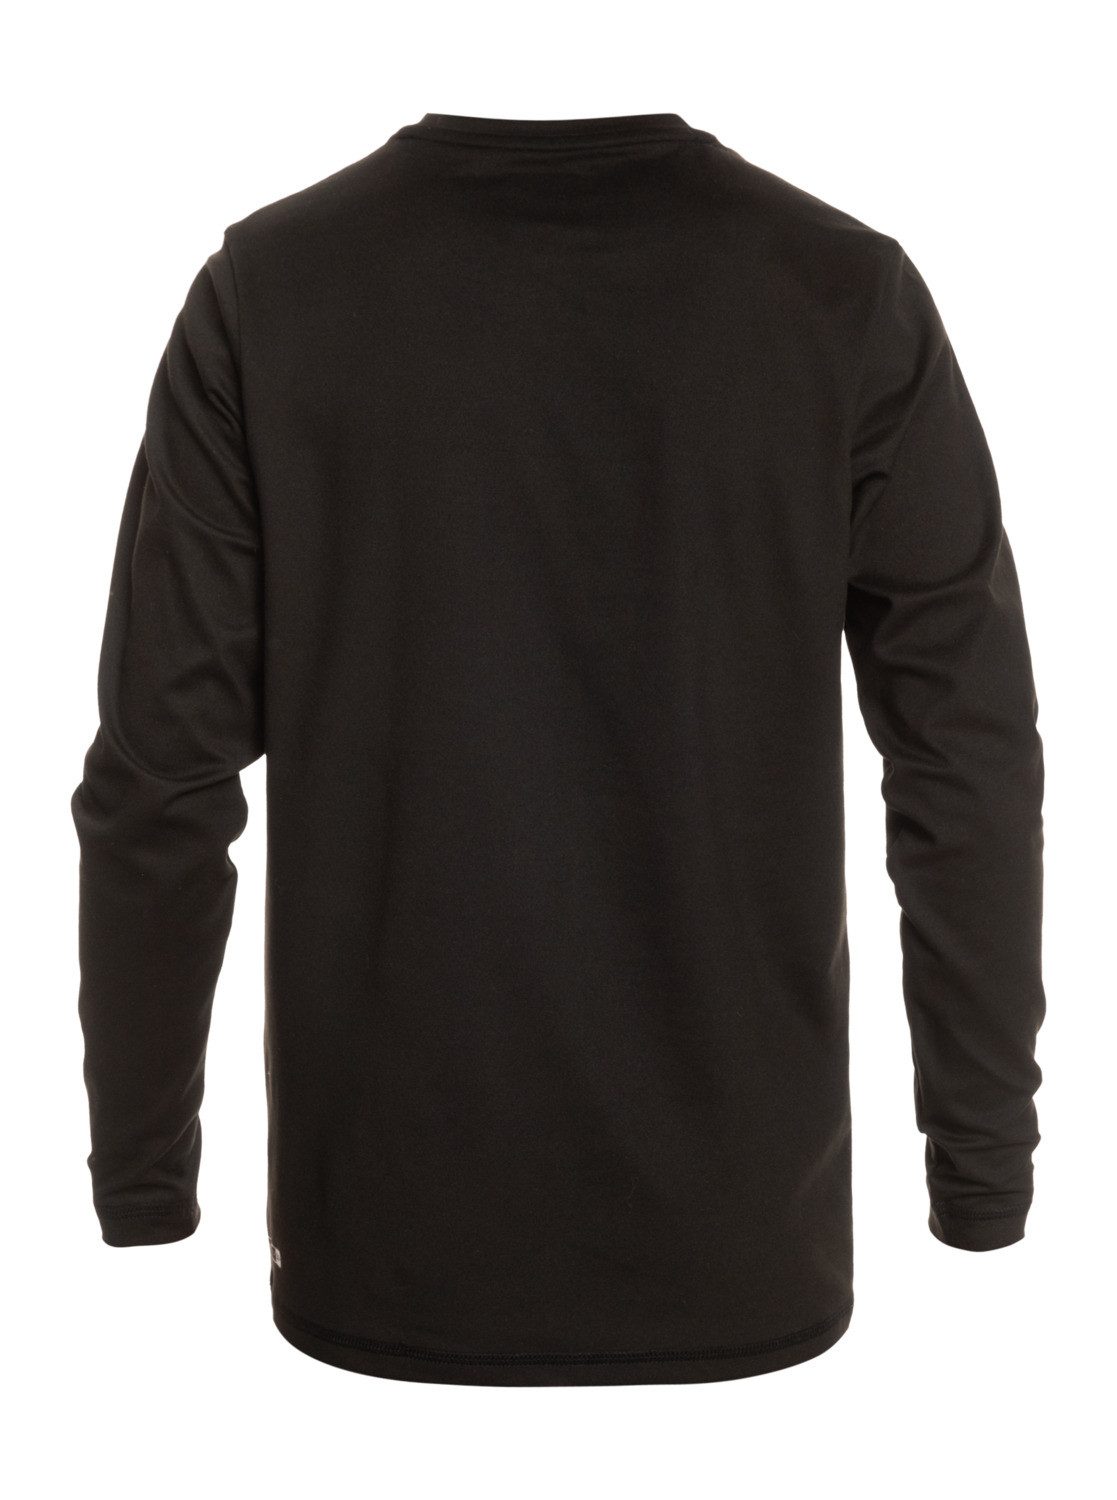 Solid Black Shirt Neopren Streak Quiksilver